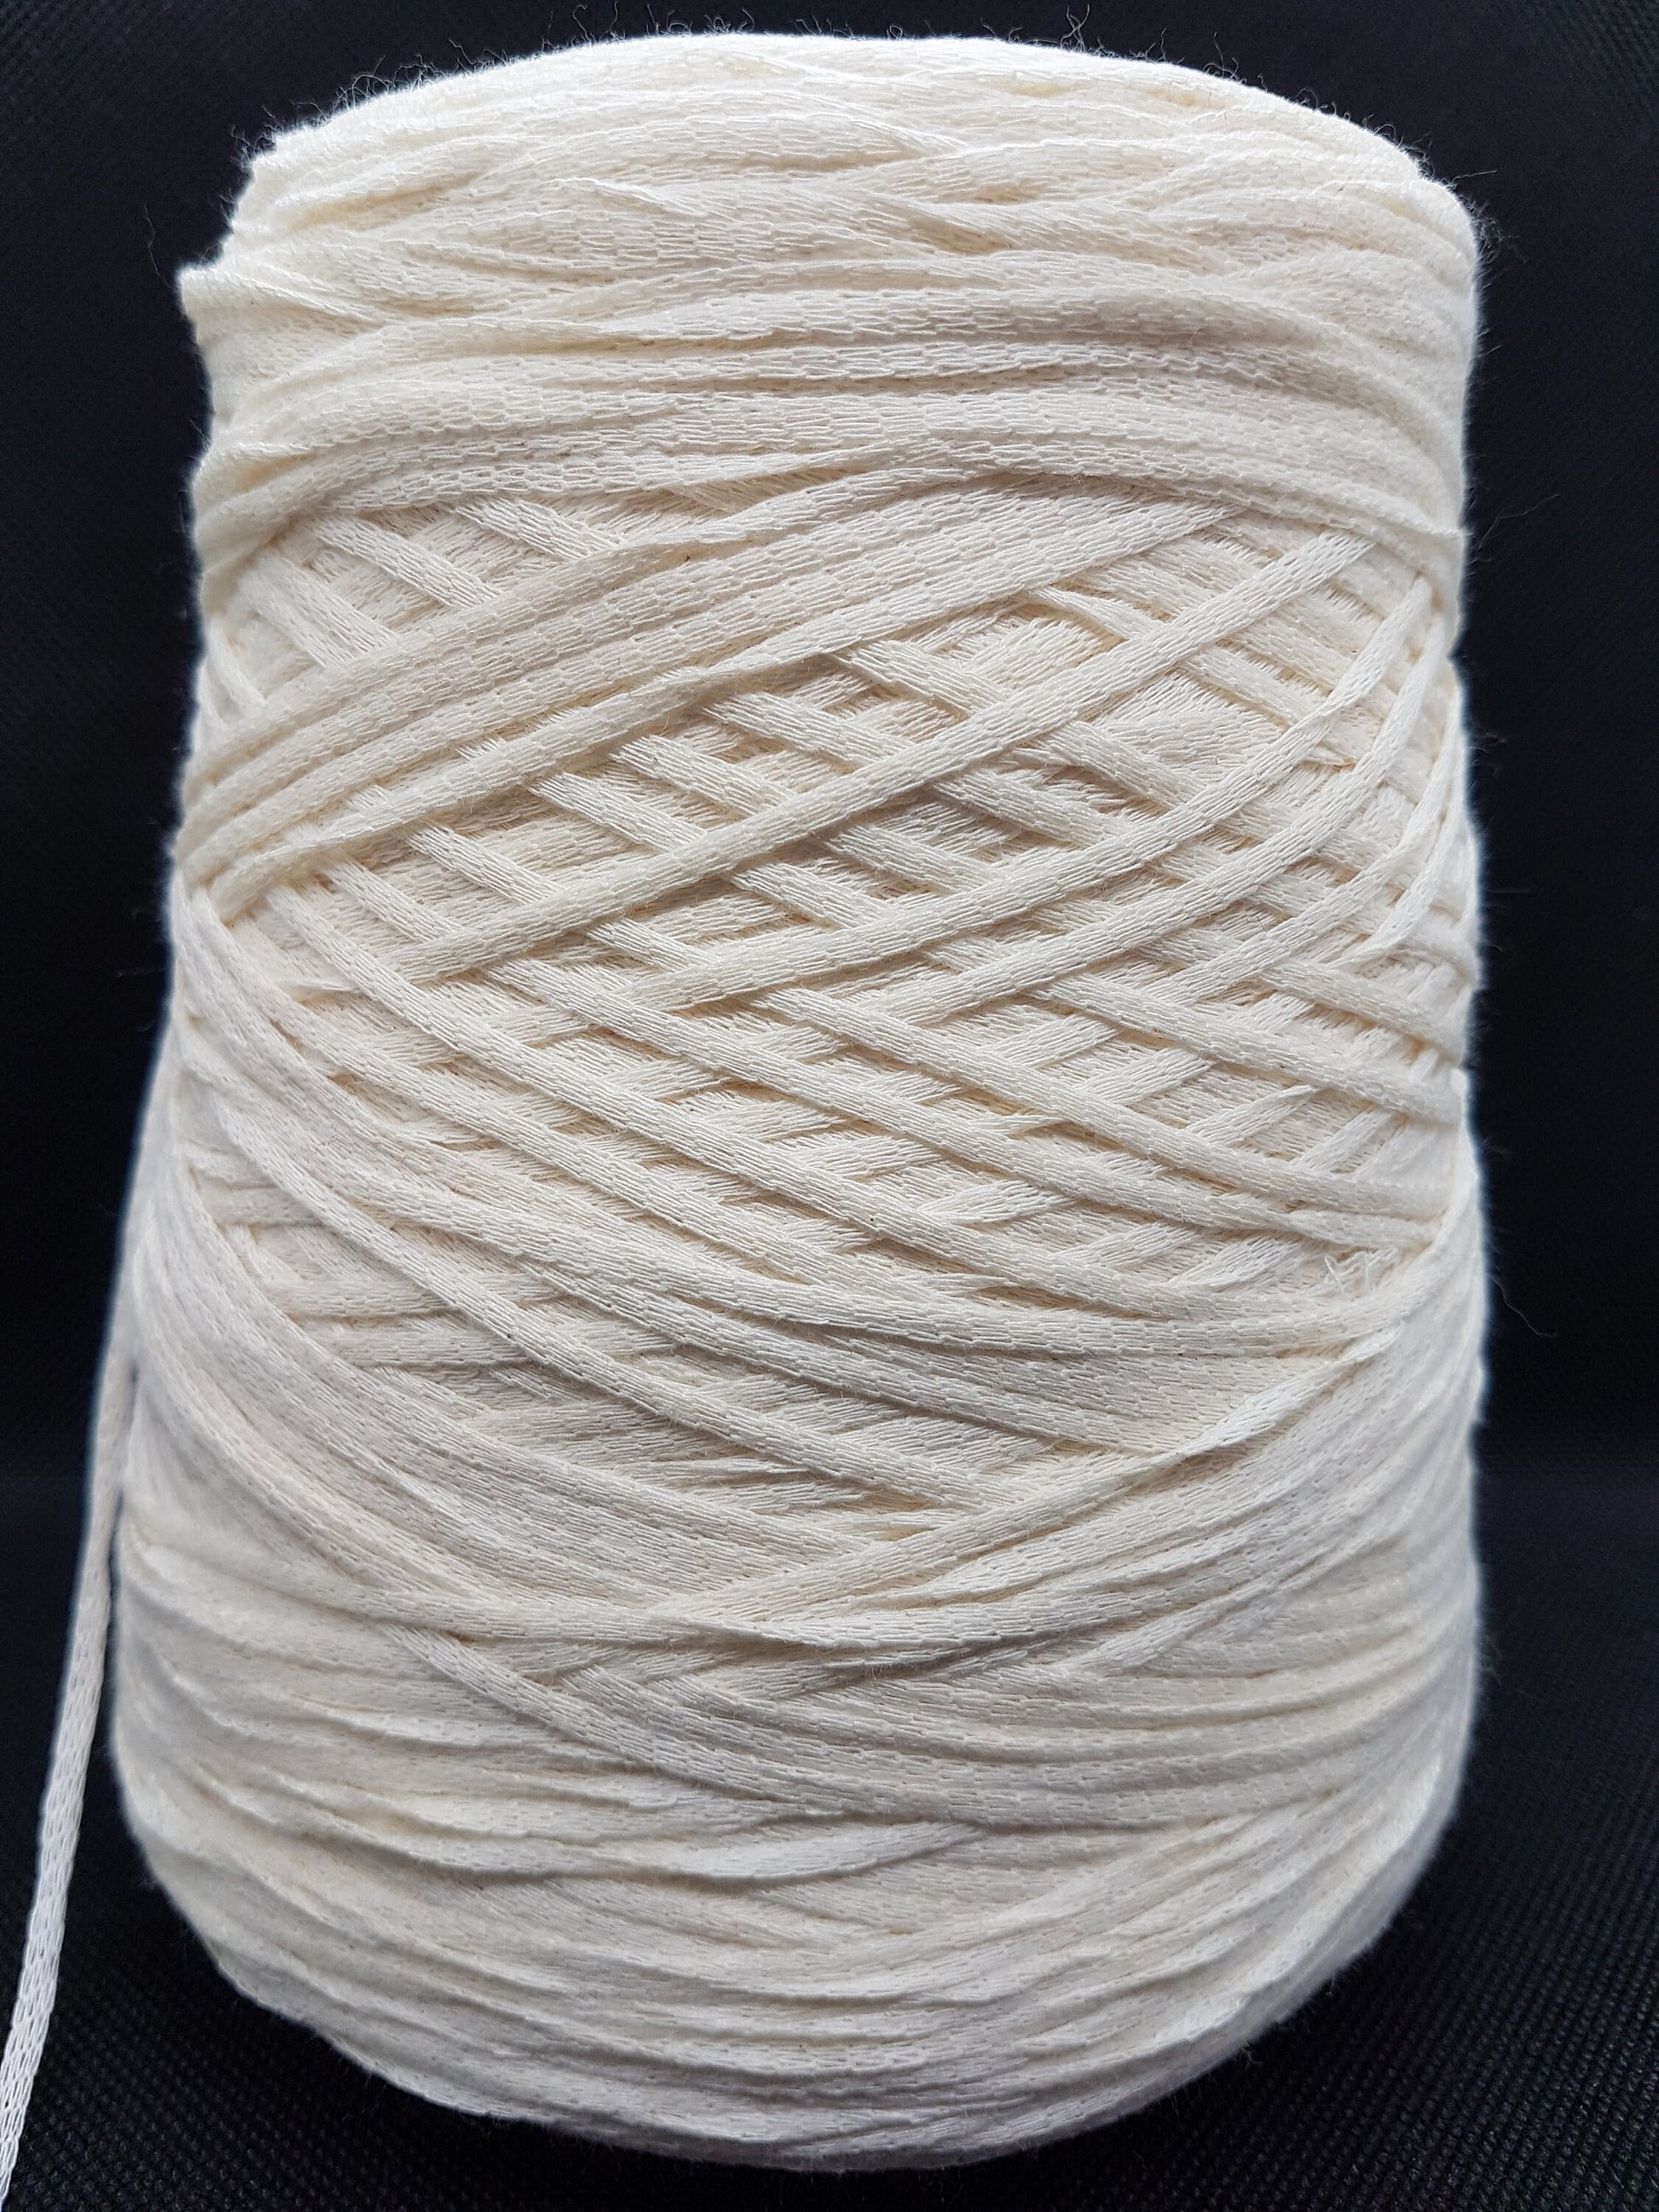 520-630g Fettuccia in morbido cotone filato italiano colore Bianco Latte N.53